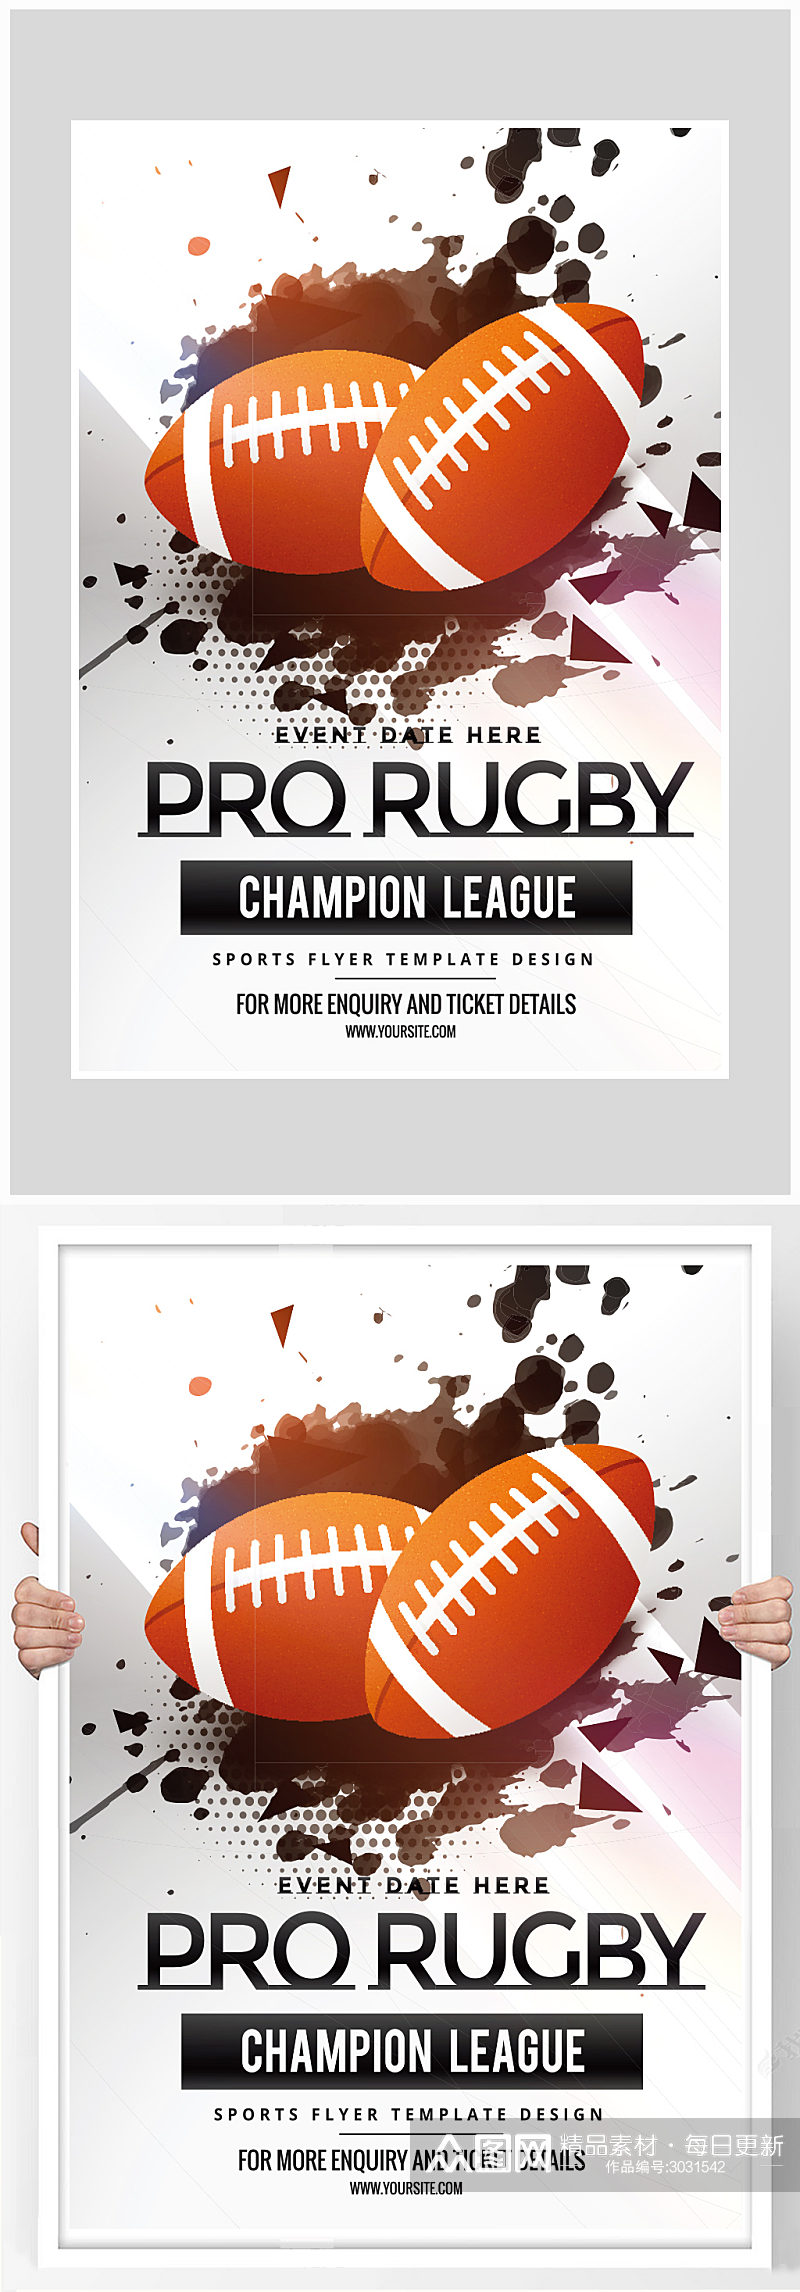 创意简约橄榄球运动比赛海报设计素材